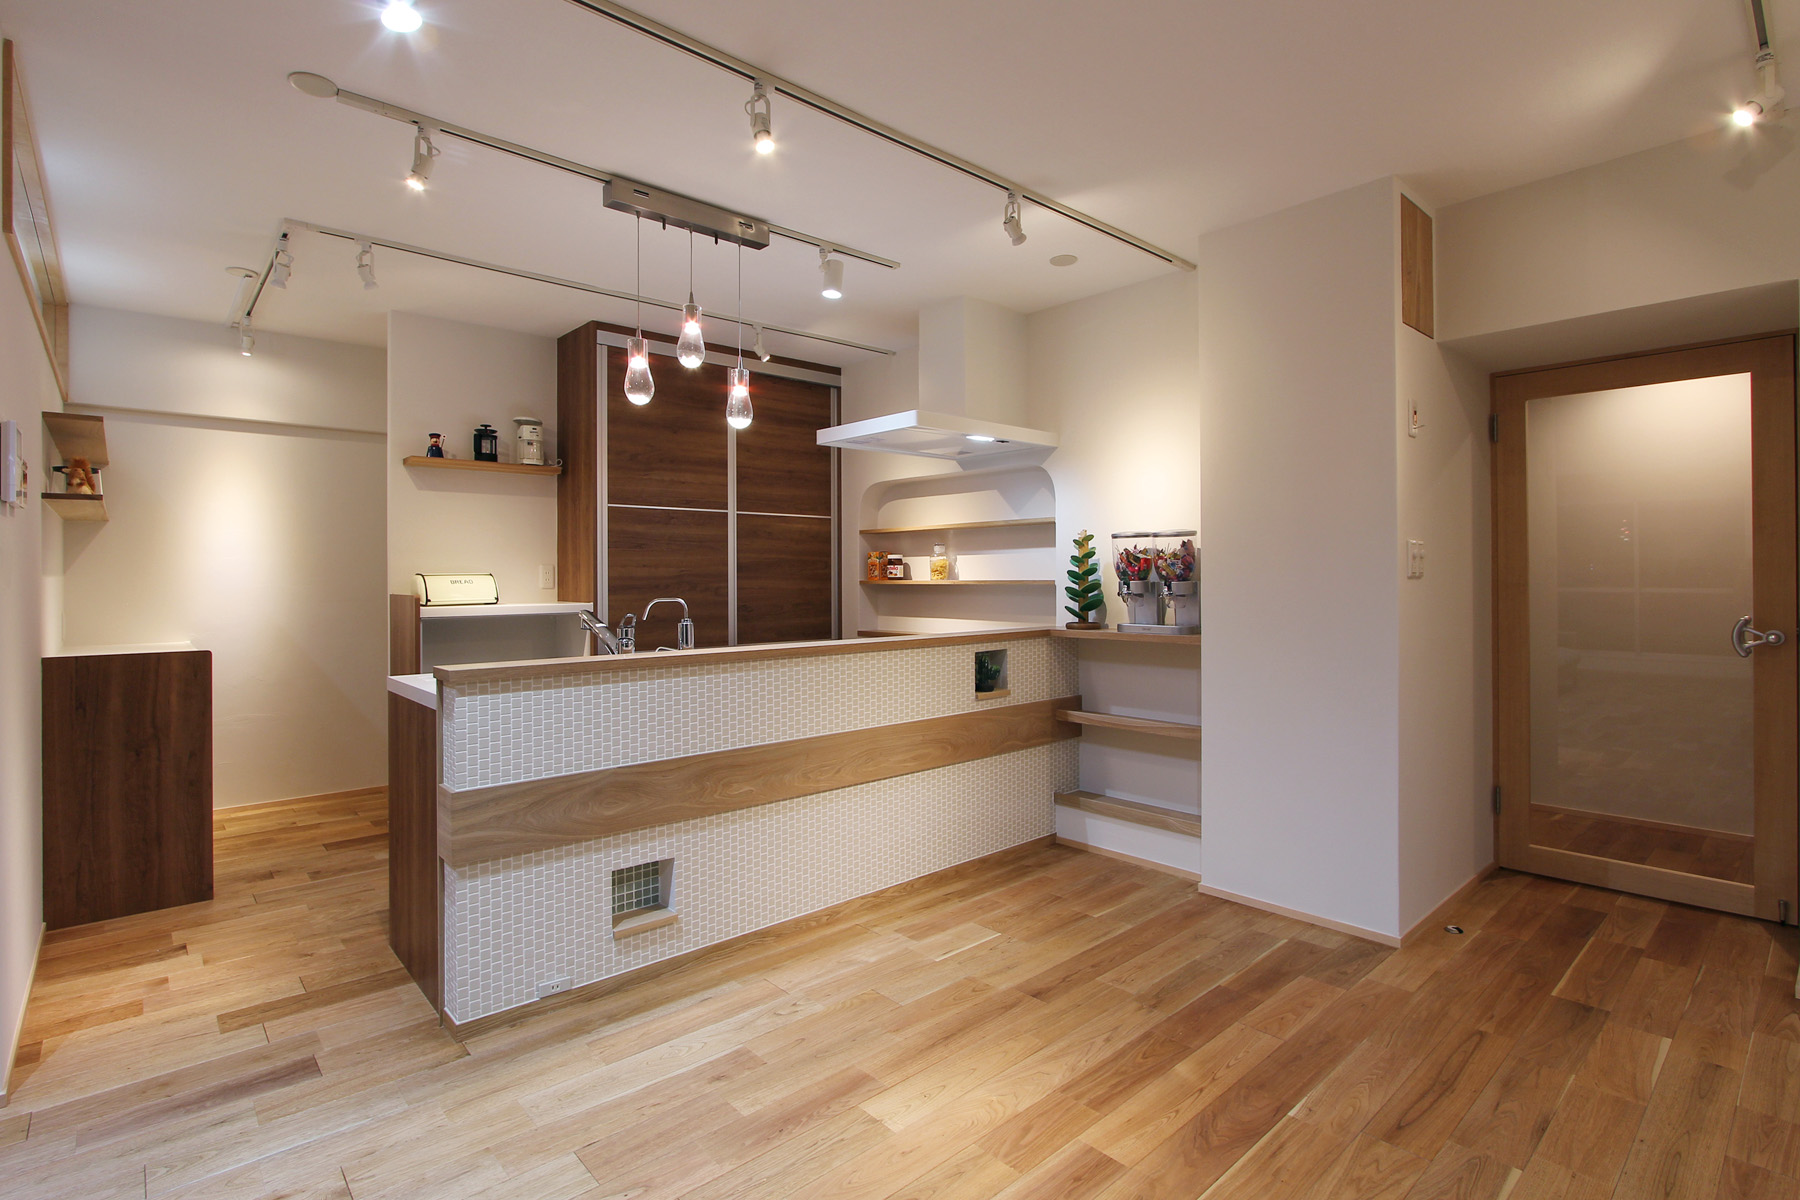 インテリアを楽しむ為のキッチン 可愛らしいキッチン空間 マンションリノベーション京都